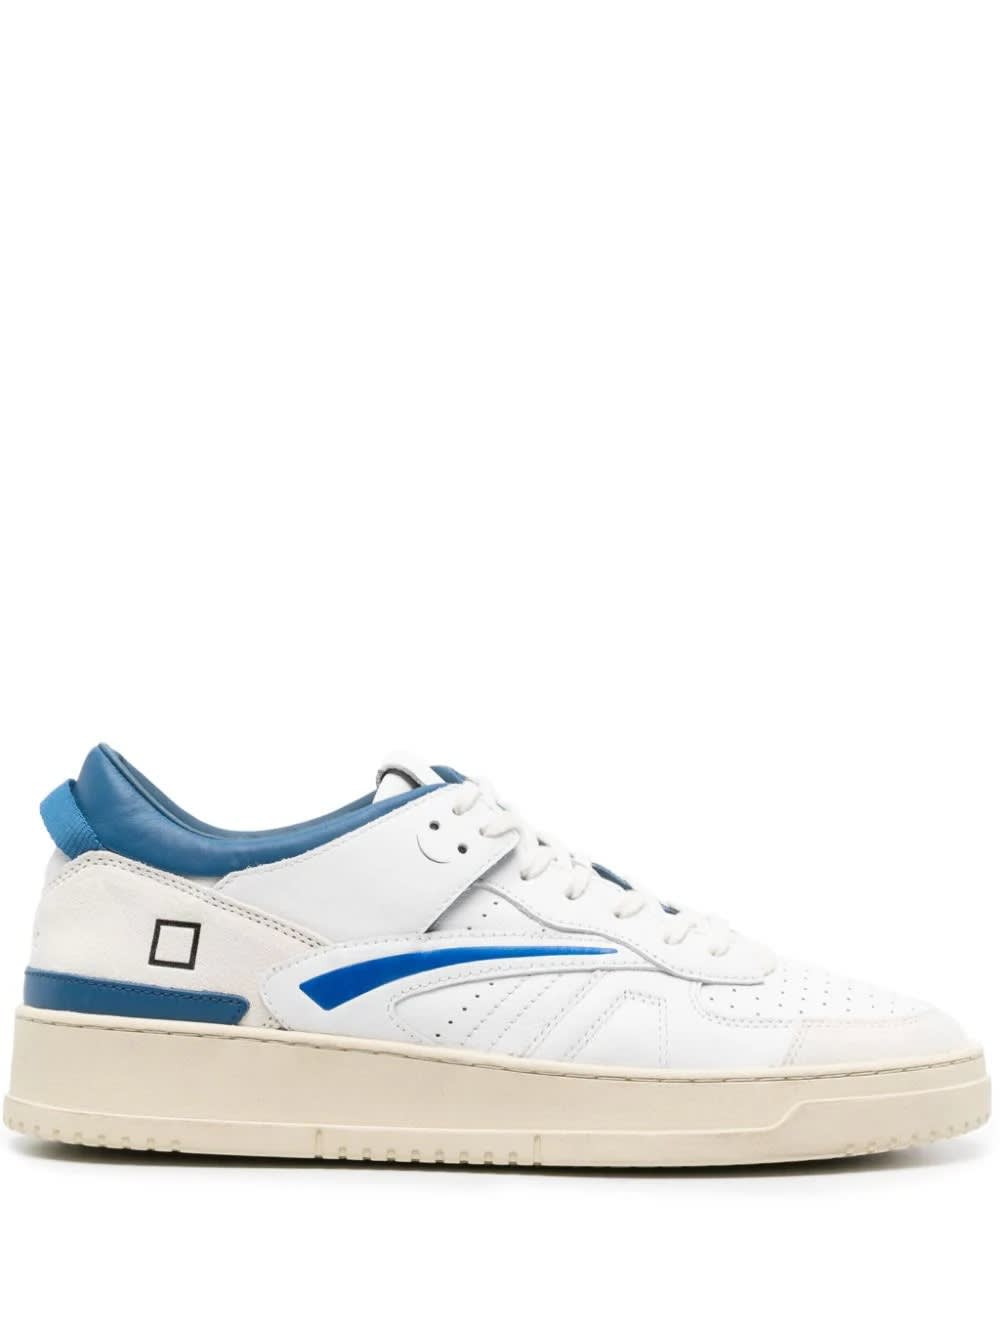 Shop Date White And Bluettetorneo Sneakers